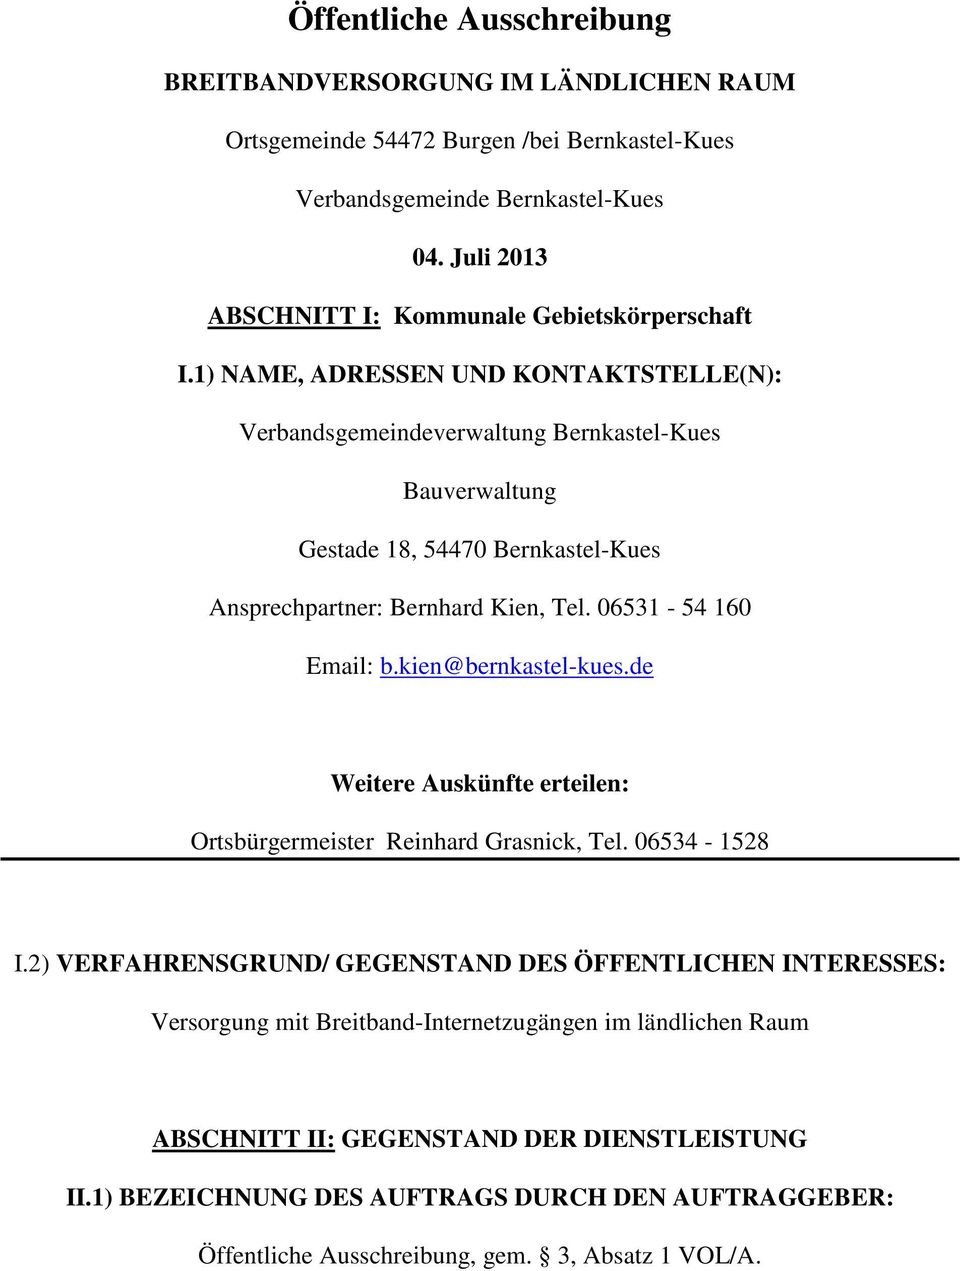 1) NAME, ADRESSEN UND KONTAKTSTELLE(N): Verbandsgemeindeverwaltung Bernkastel-Kues Bauverwaltung Gestade 18, 54470 Bernkastel-Kues Ansprechpartner: Bernhard Kien, Tel. 06531-54 160 Email: b.